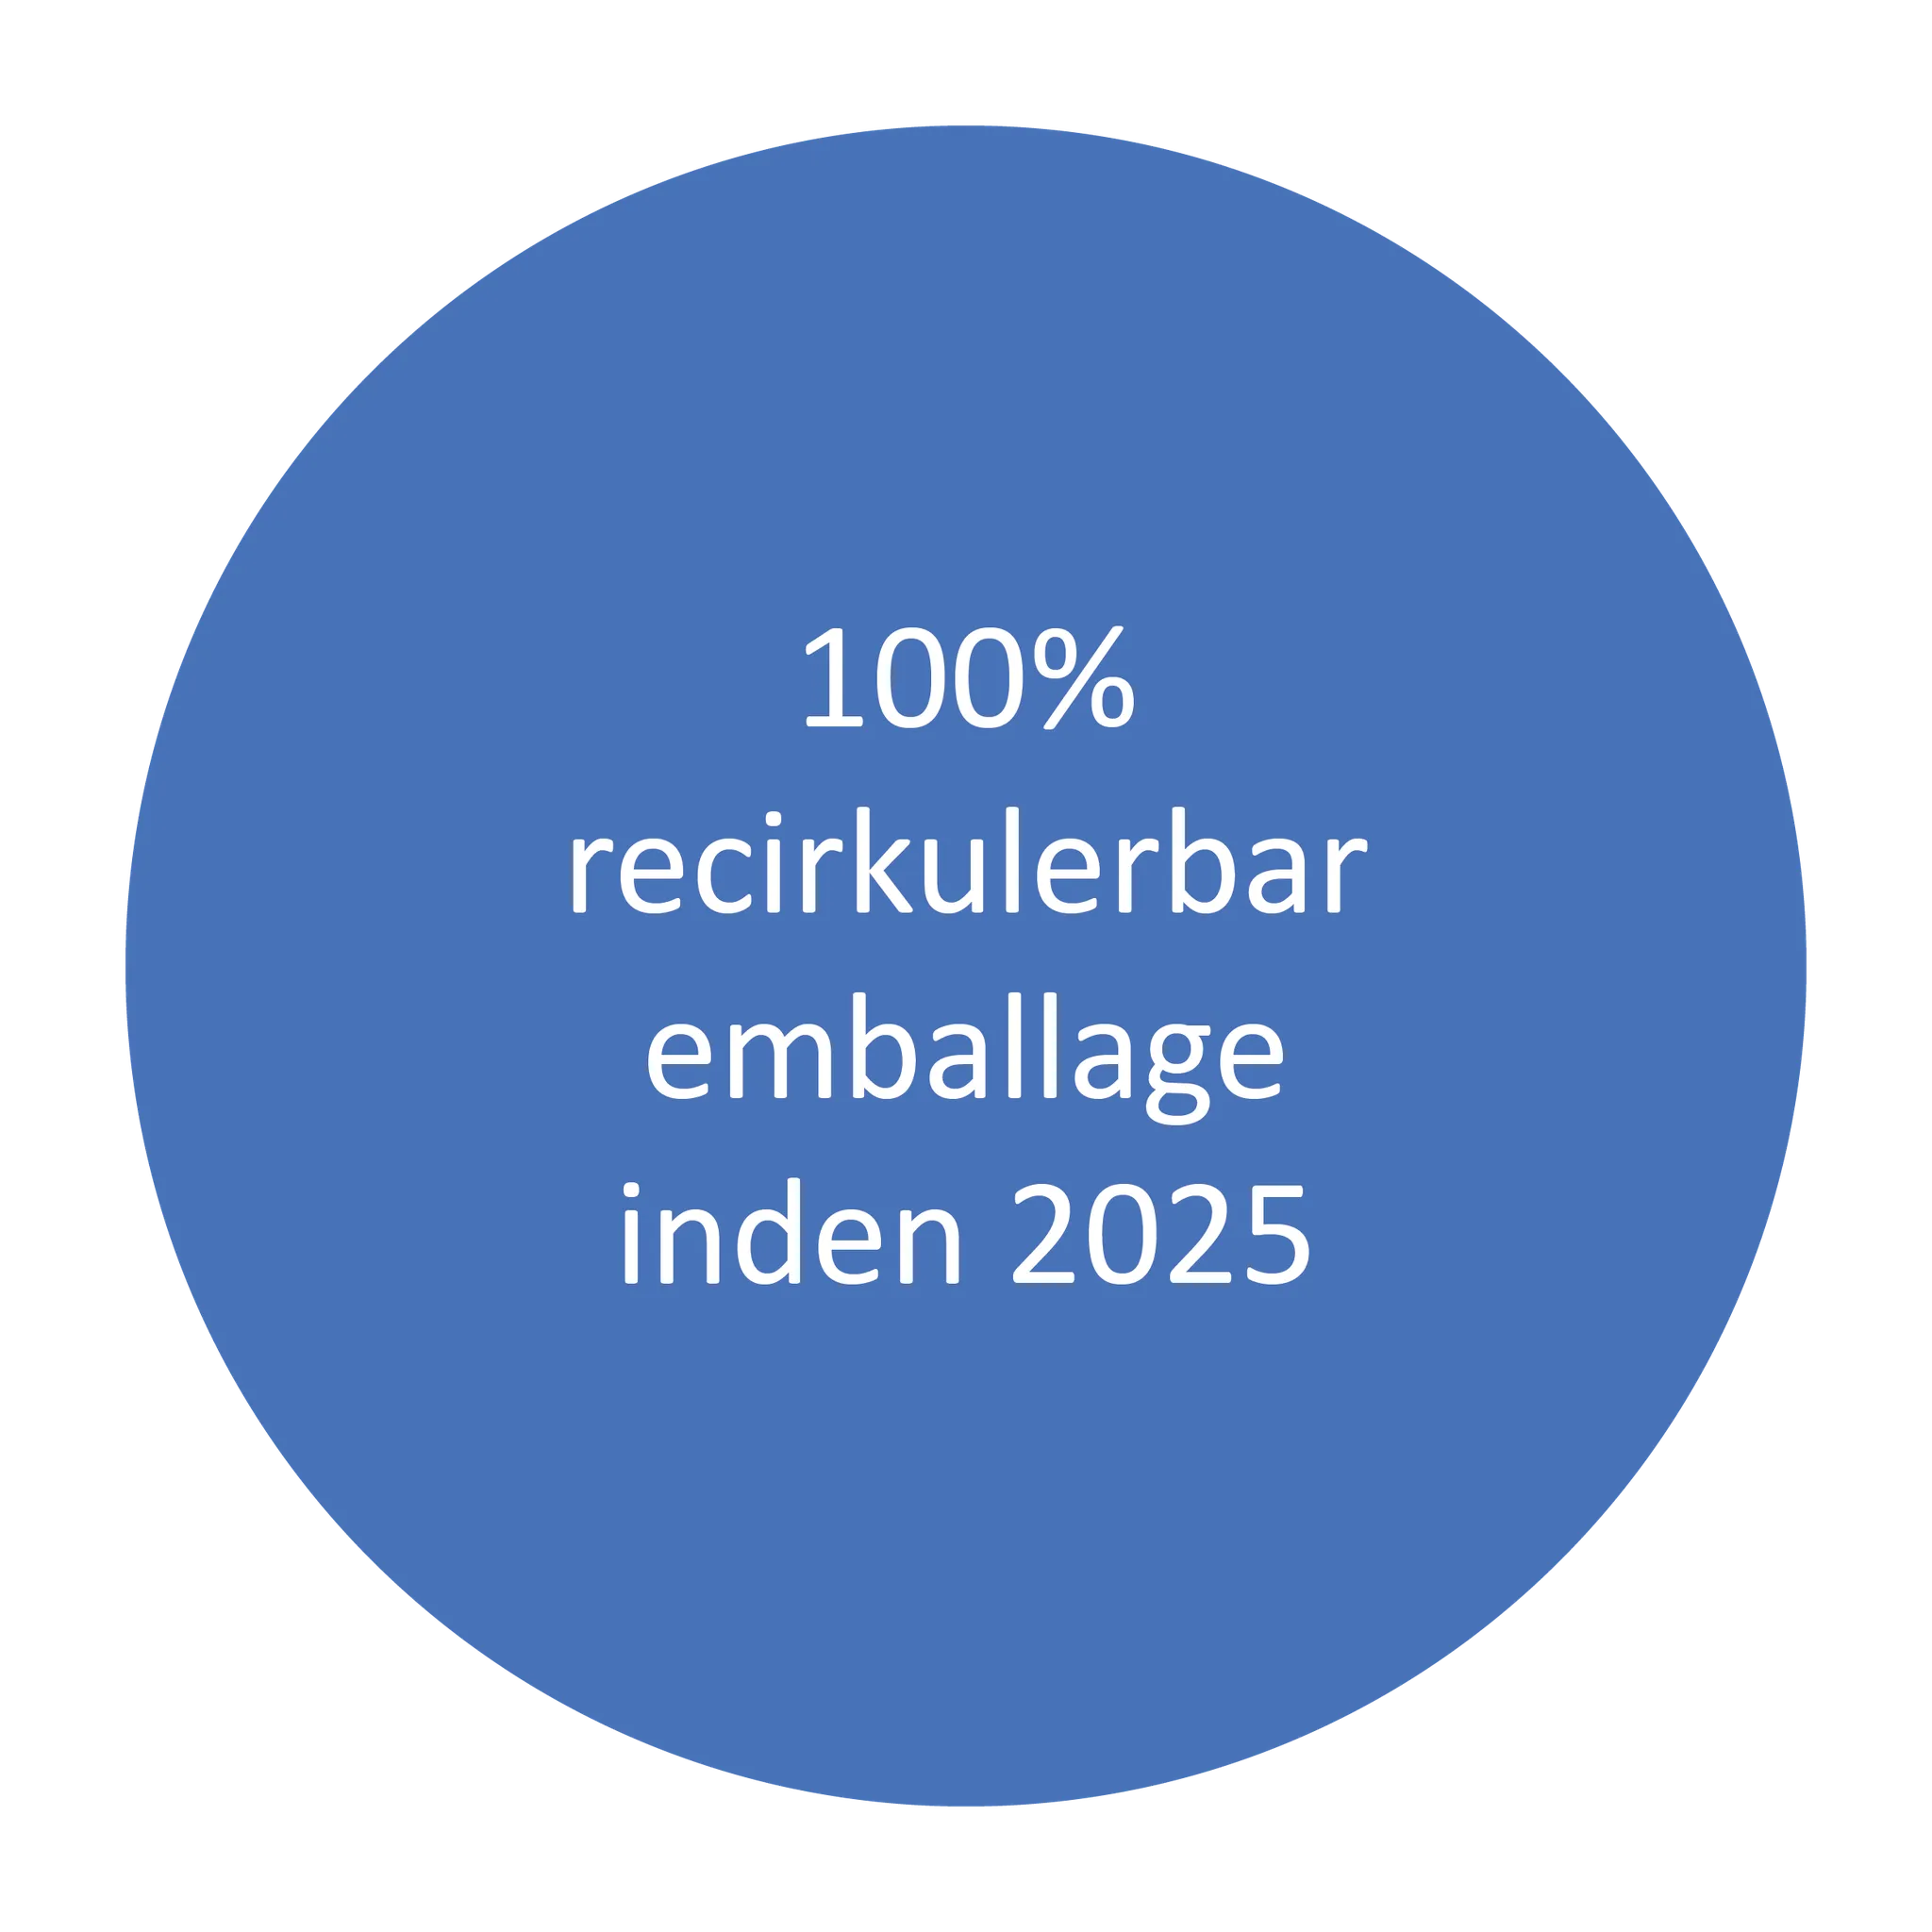 Tre blå cirkler, der indeholder tekst med forskellige mål om indsamling og genanvendelse af emballage